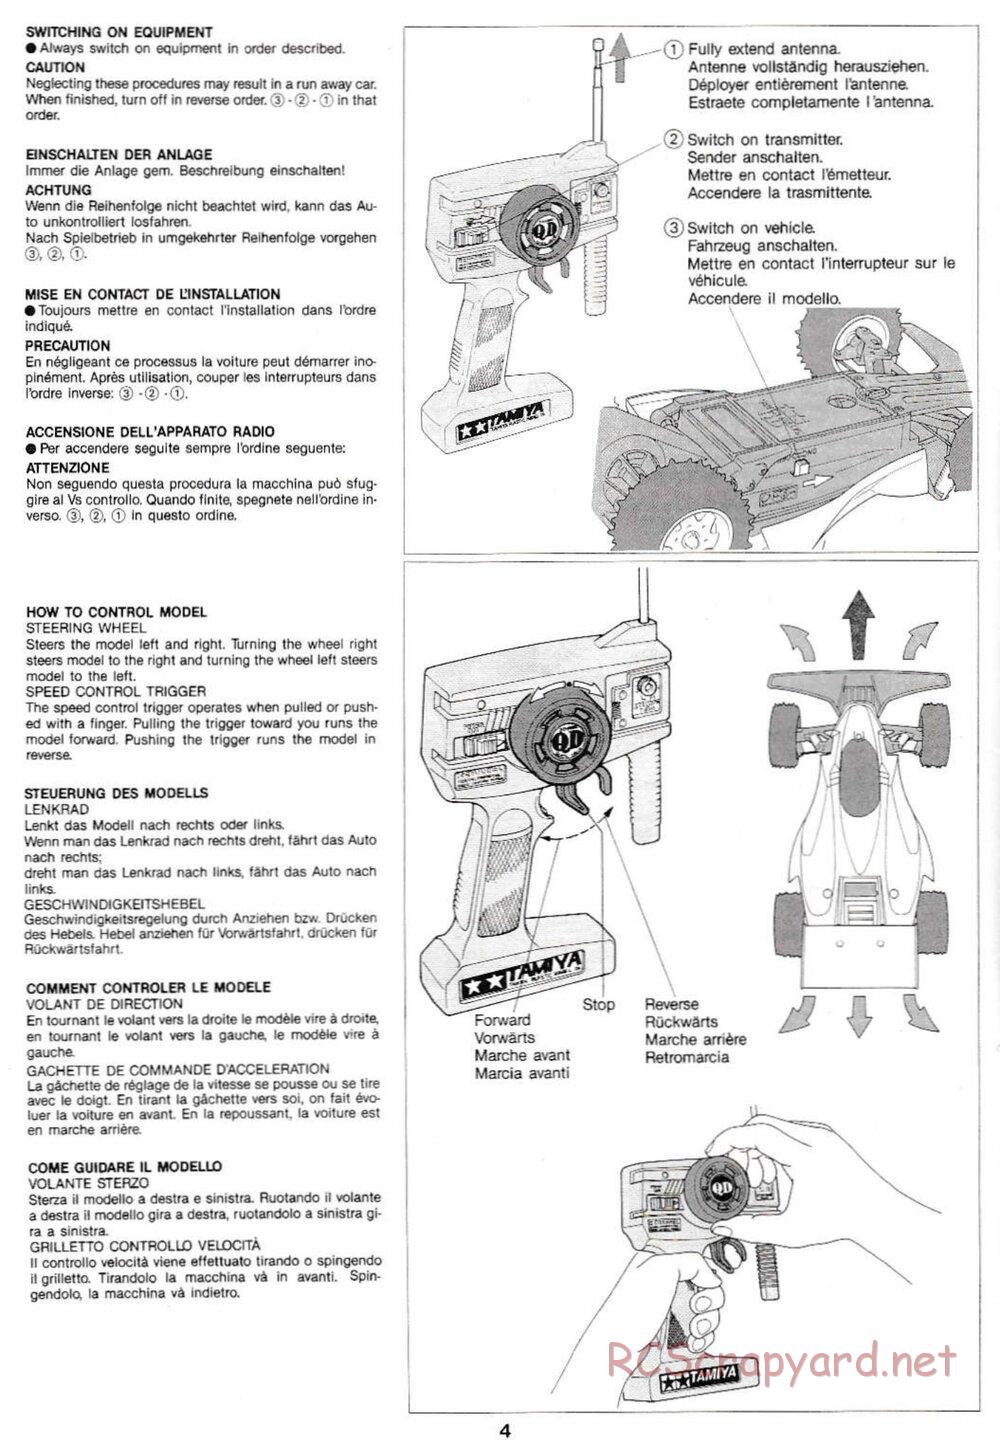 Tamiya - Manta Ray QD Chassis - Manual - Page 4